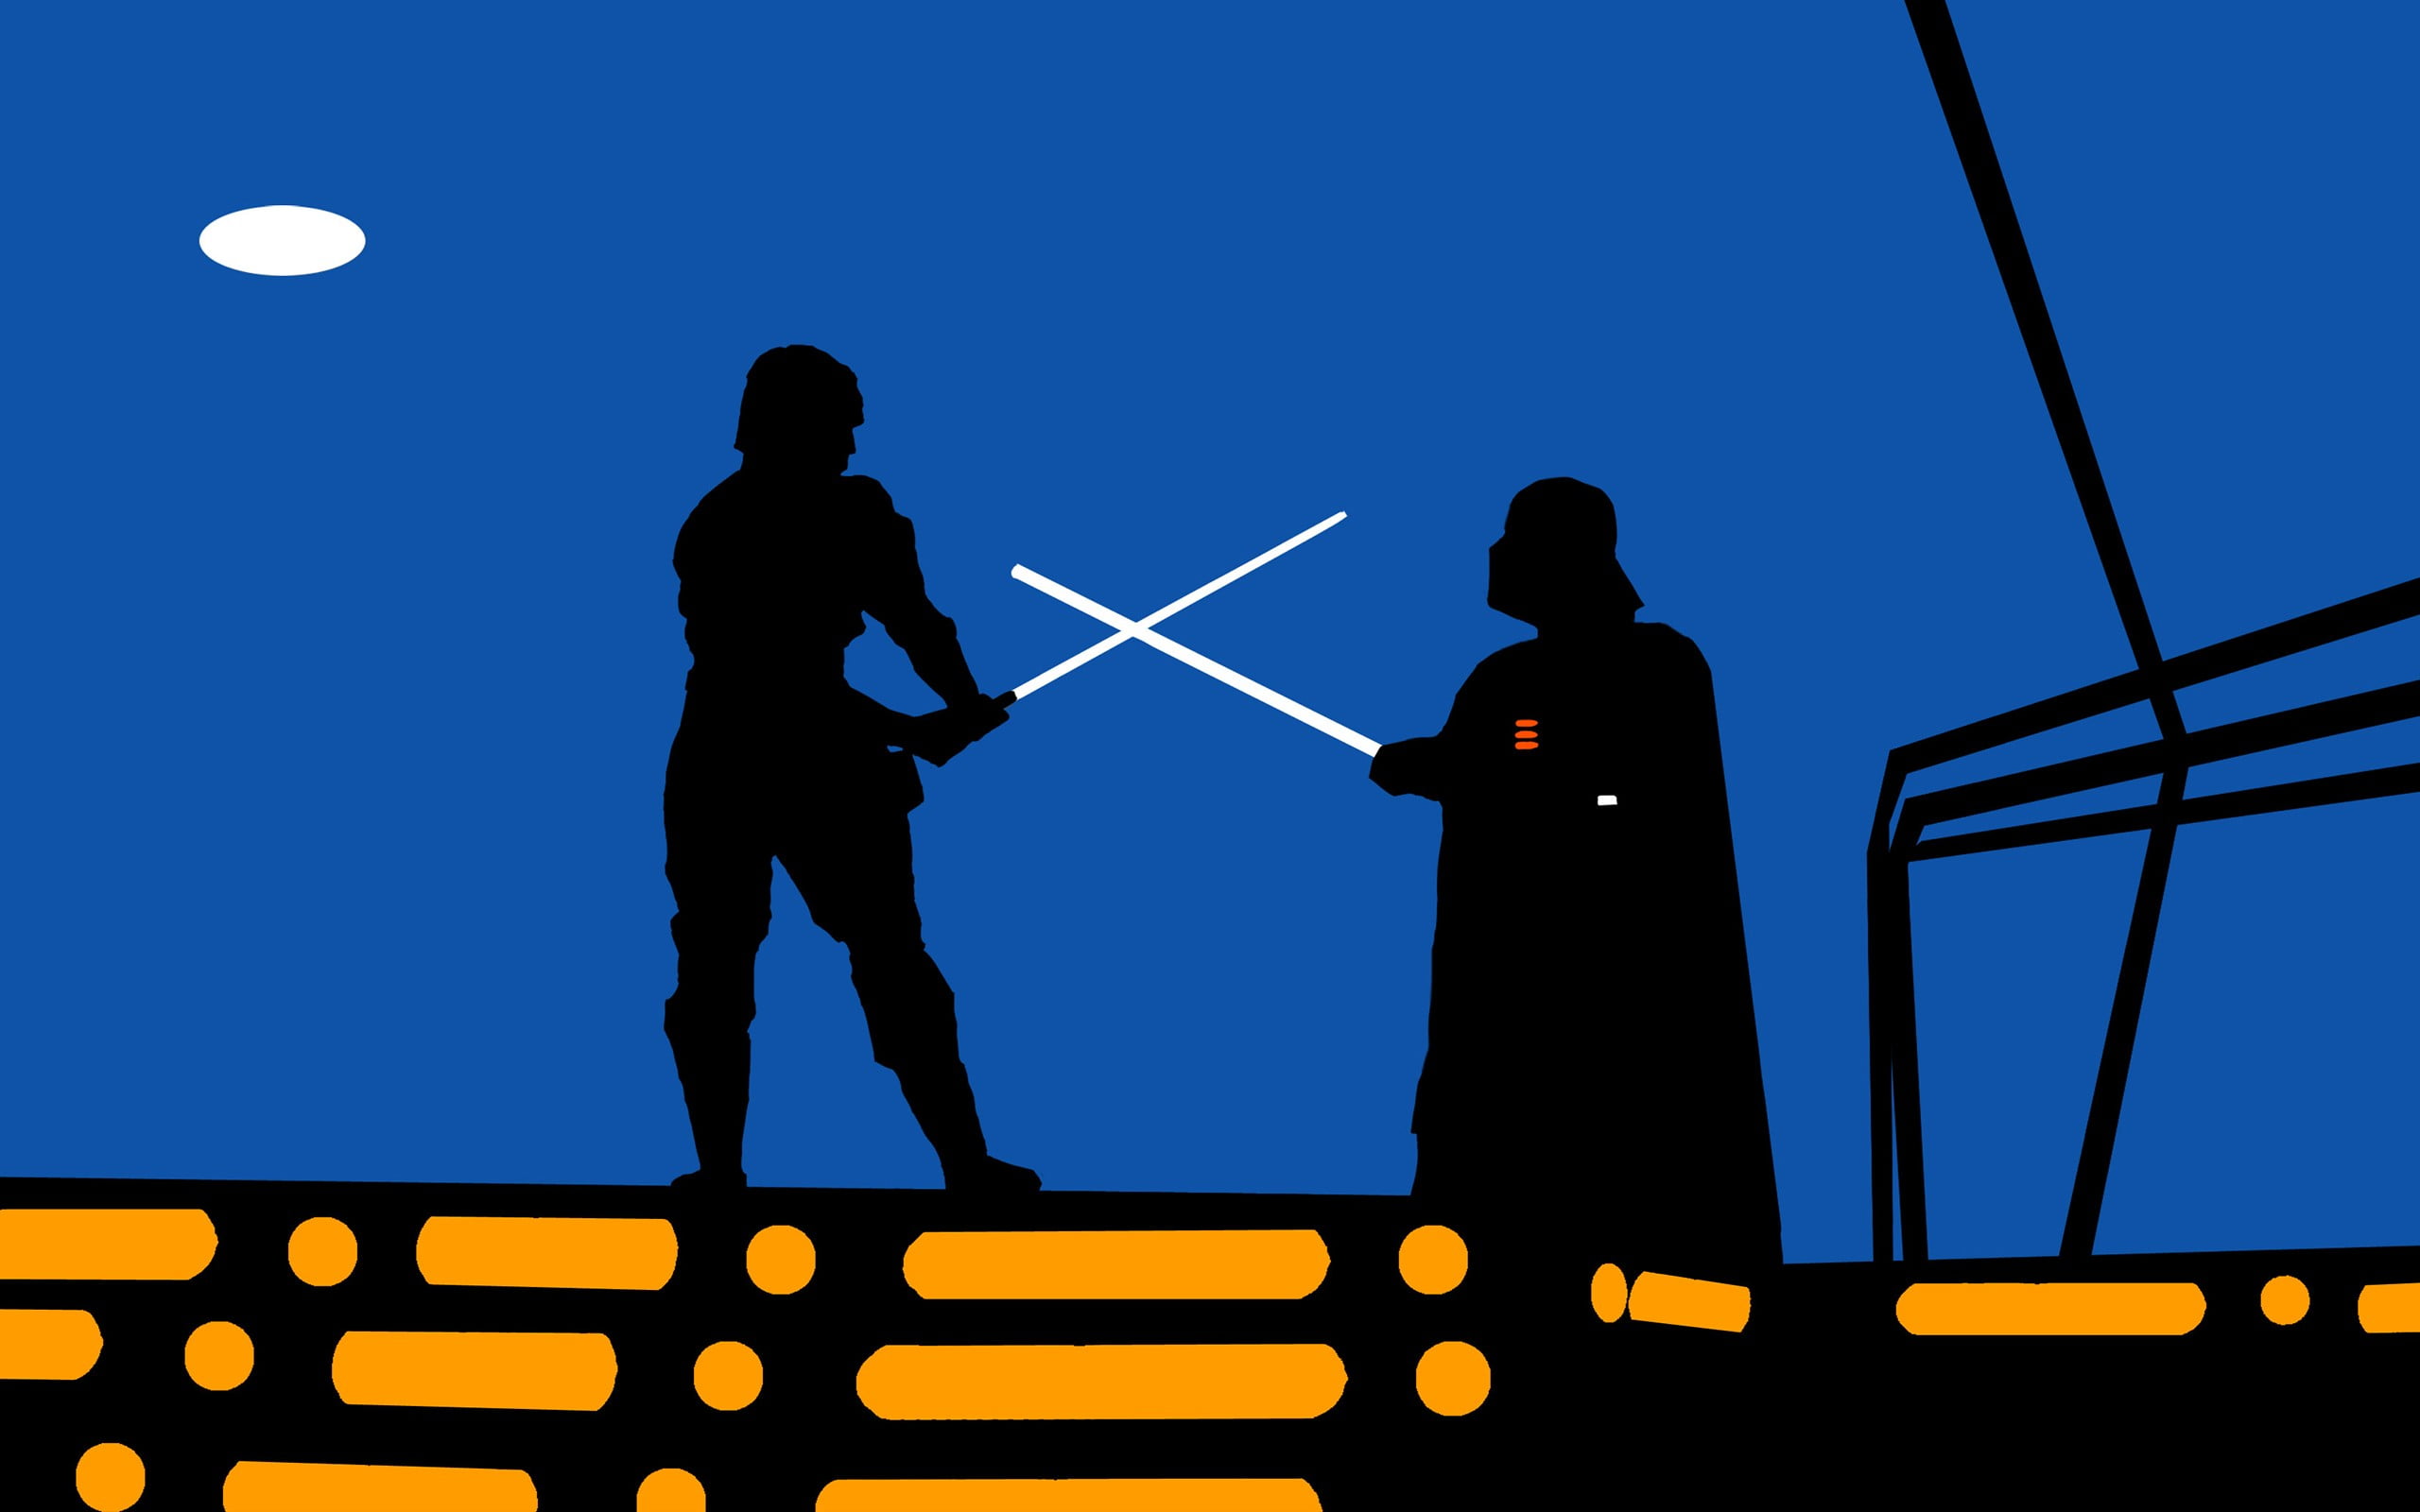 black and blue man illustration, Star Wars, minimalism, Darth Vader, Luke Skywalker